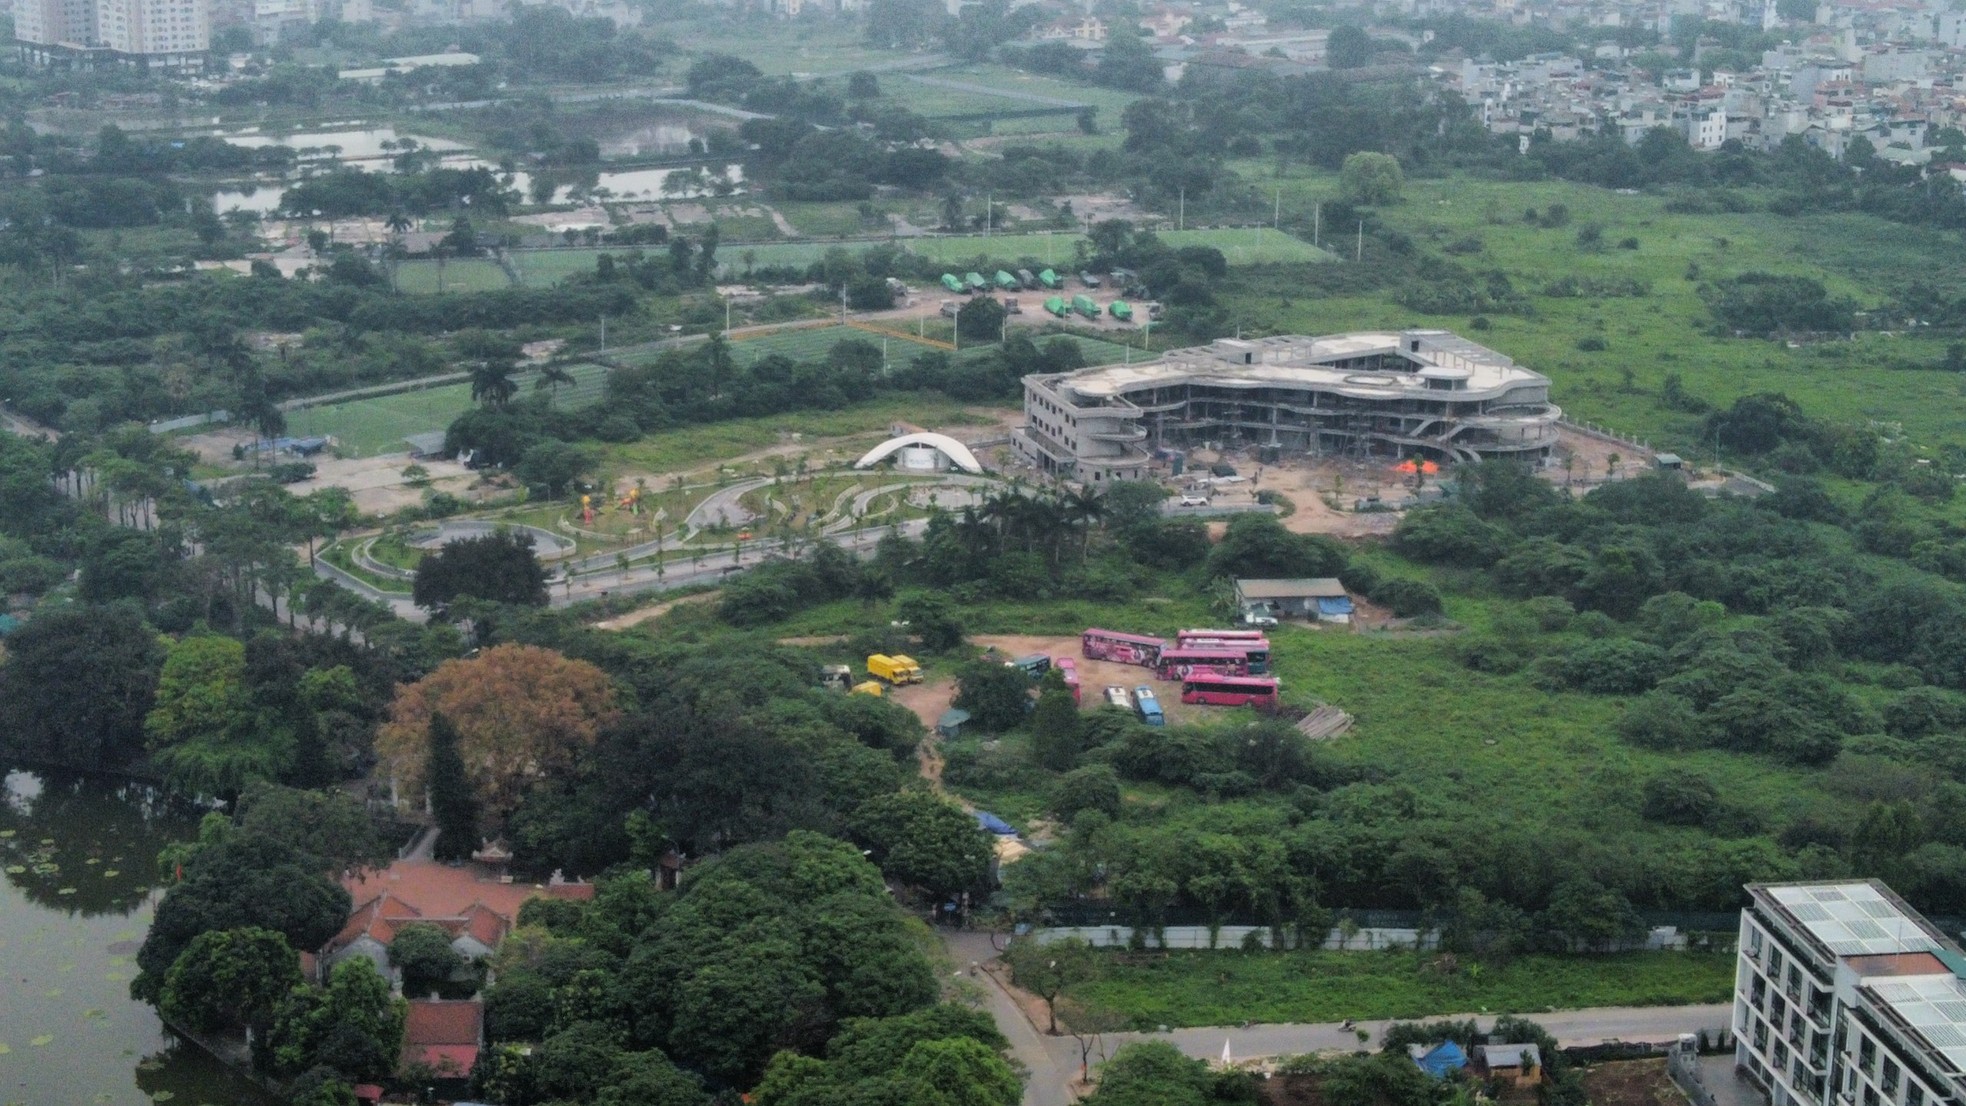 Khu đất 'mọc' bãi xe lậu nơi phường đông dân nhất Hà Nội chuẩn bị xây trường học ảnh 8